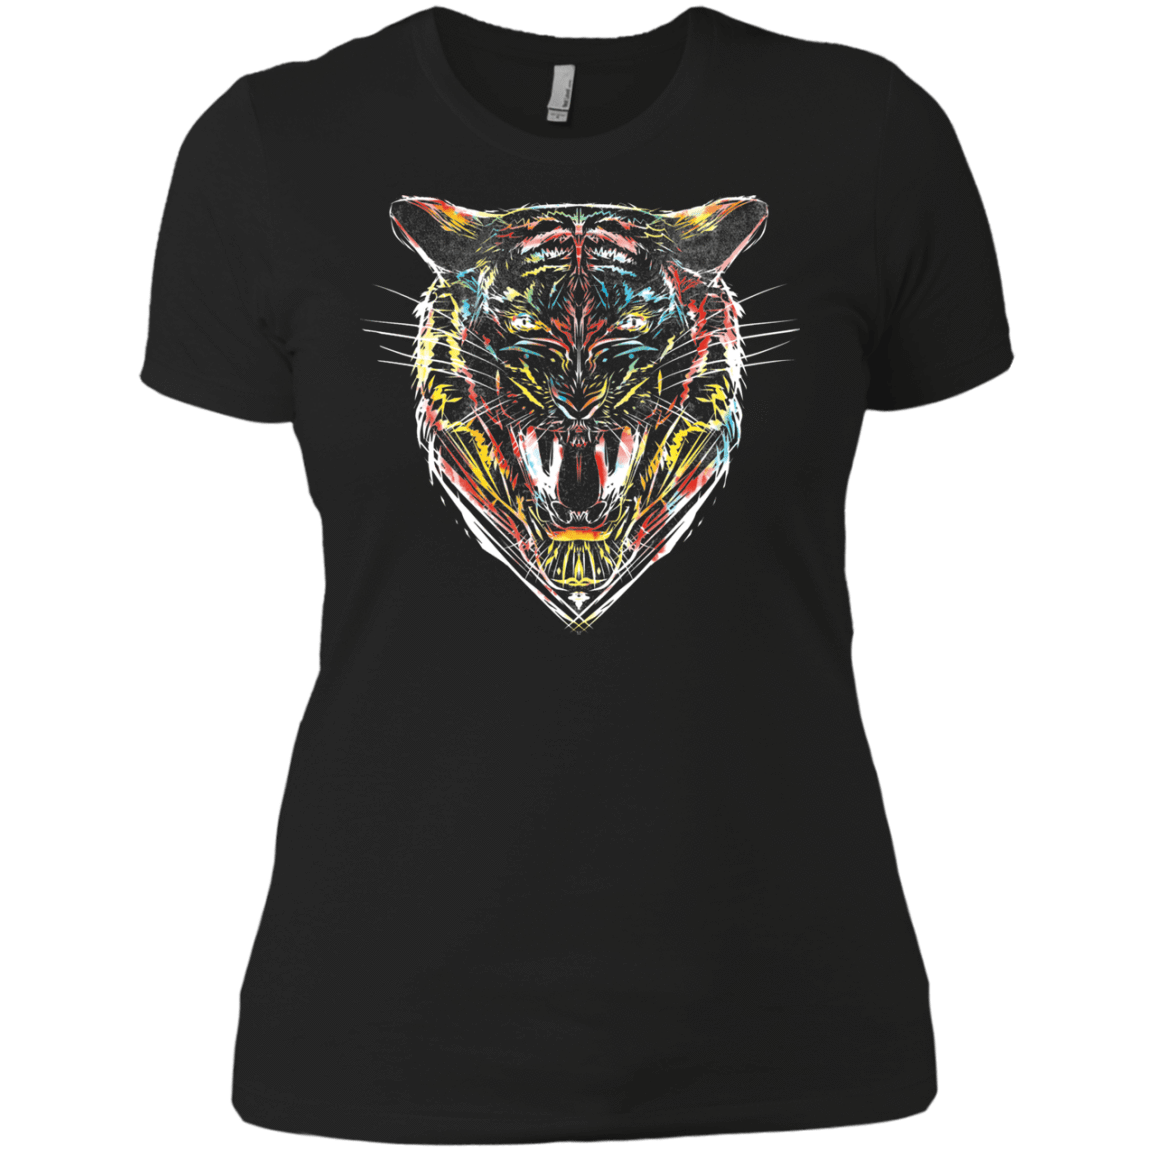 T-Shirts Black / X-Small Stencil Tiger Women's Premium T-Shirt